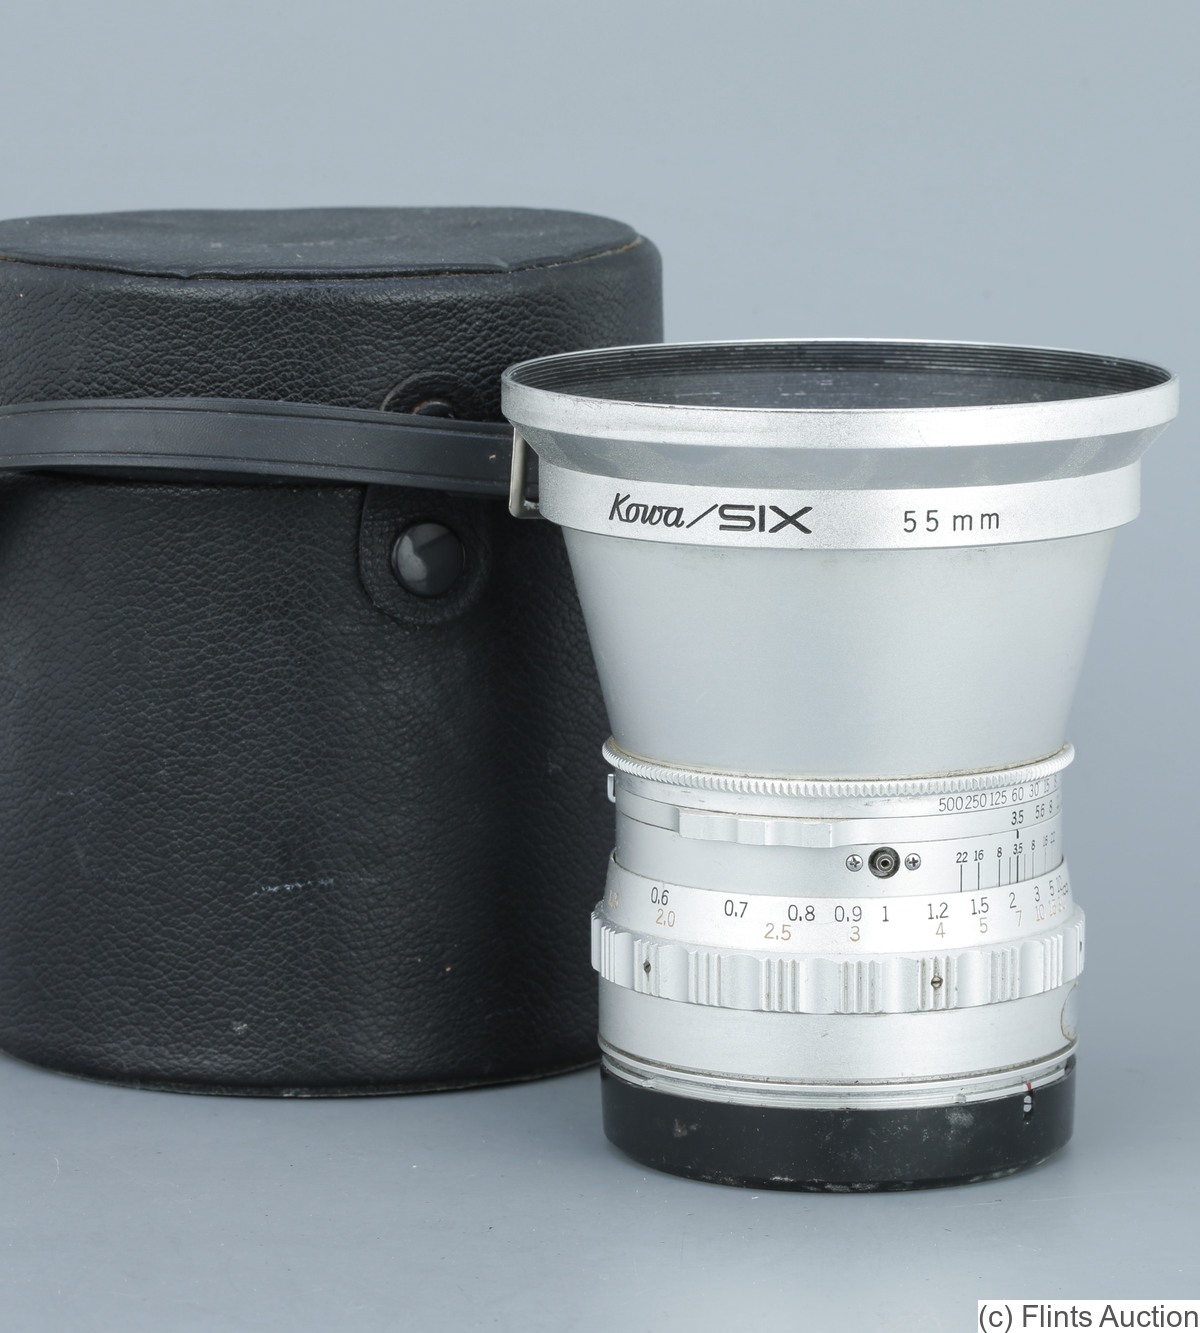 Kowa: 55mm (5.5cm) f3.5 camera